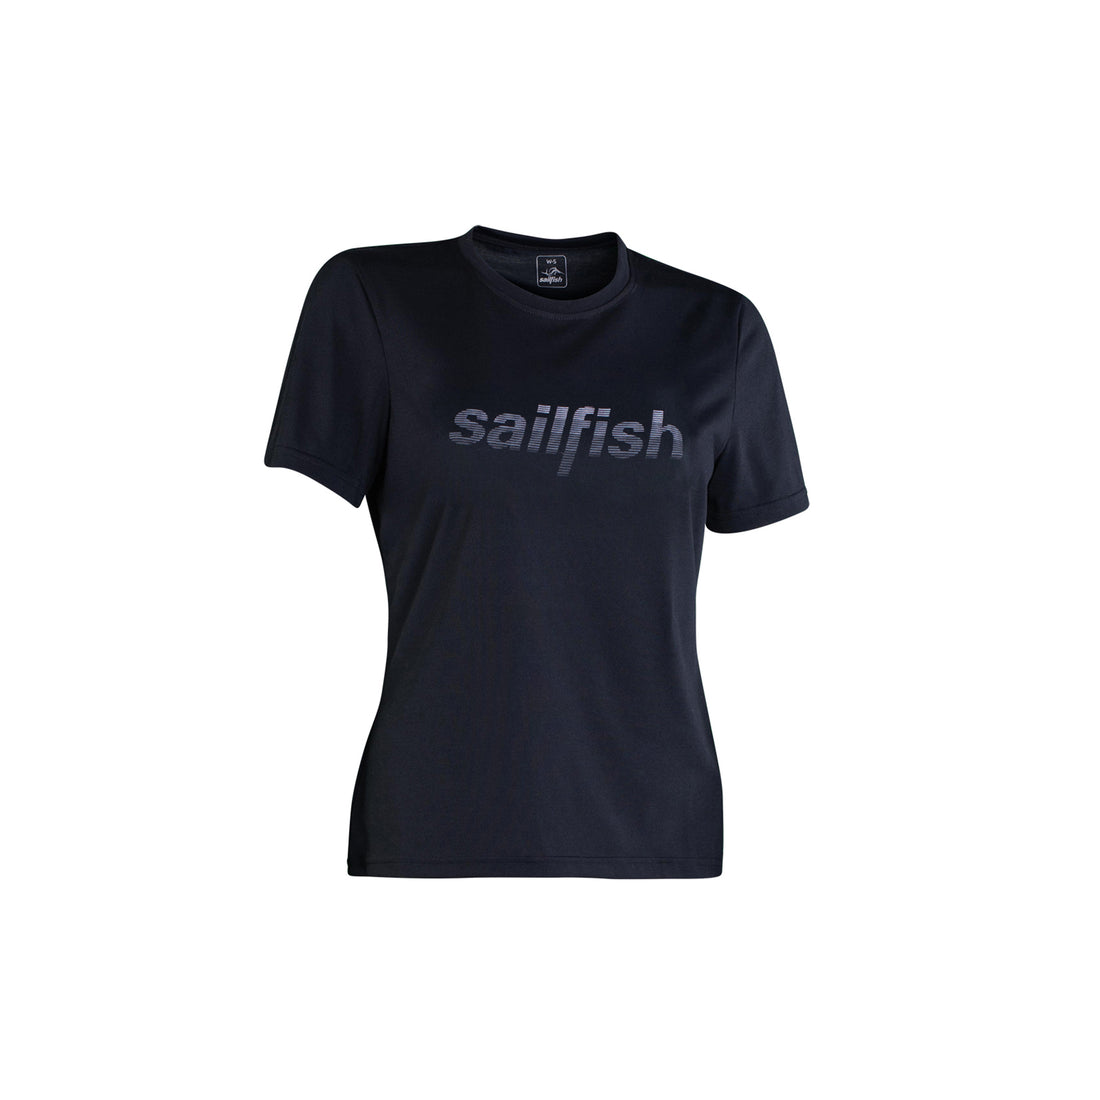 Apparel wear from sailfish ✓ - sailfish GmbH